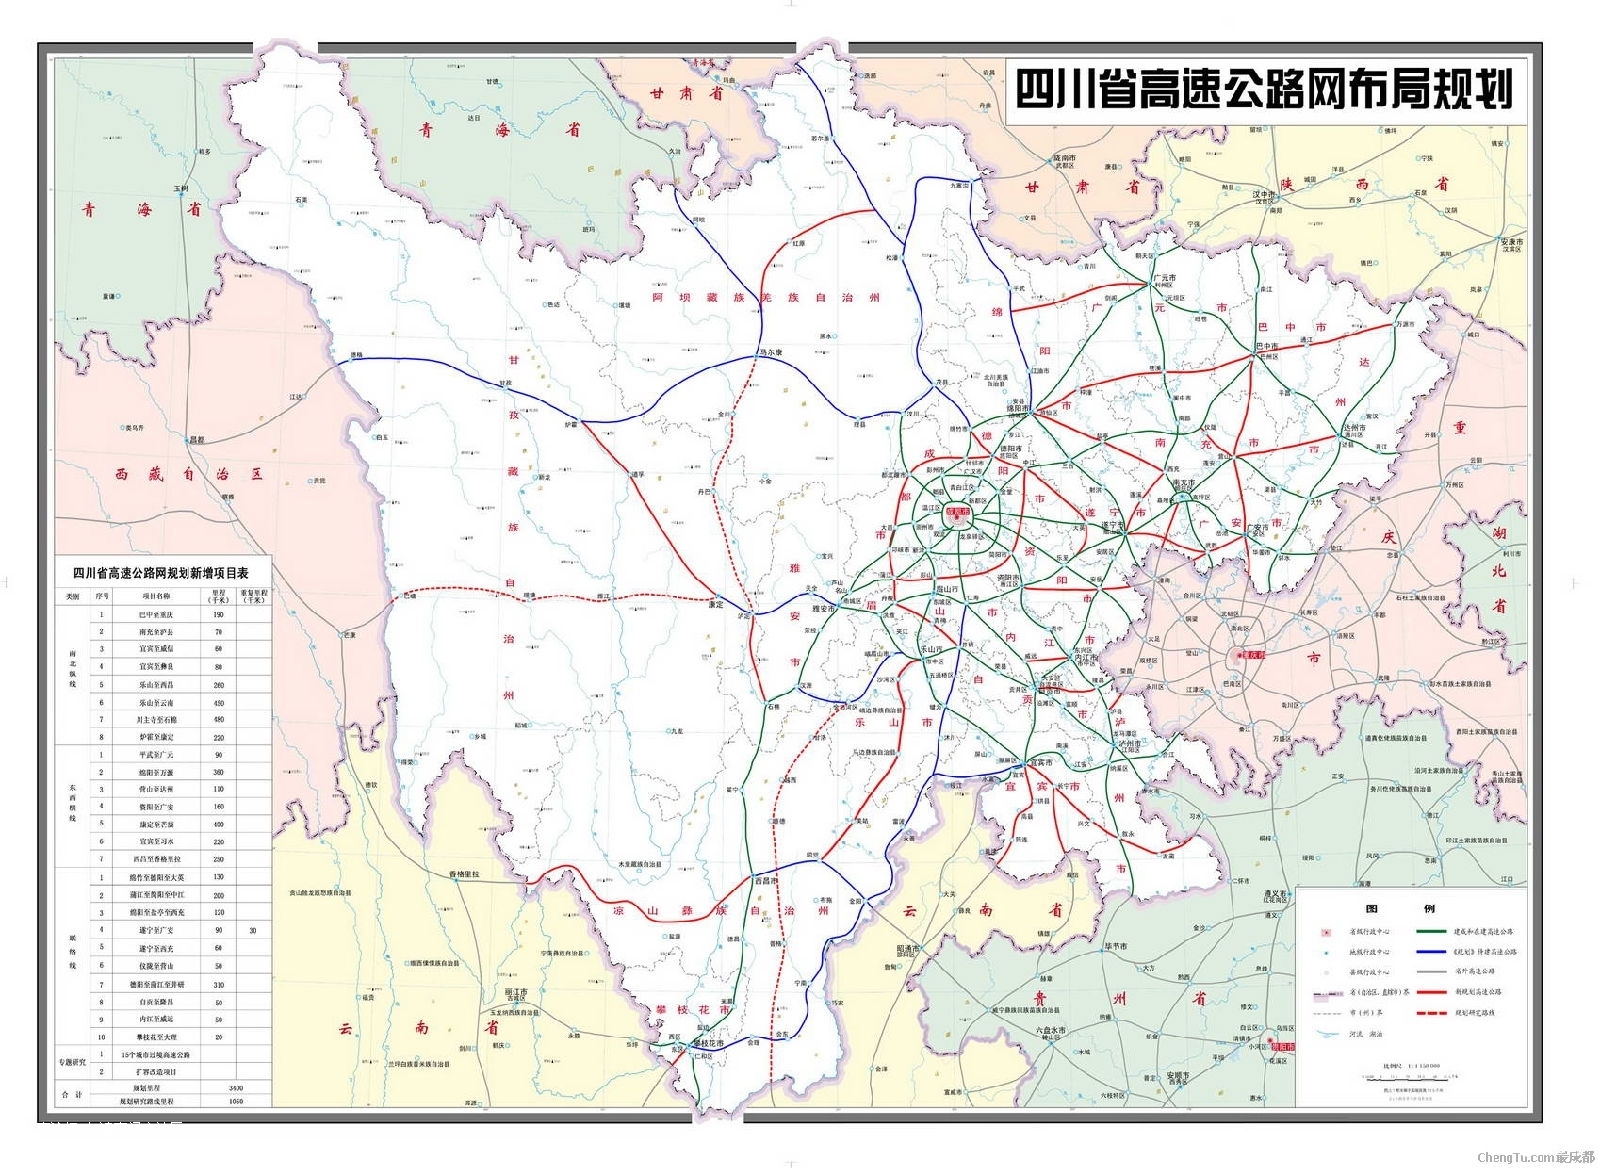 四川省市速公路网规划图 110526004239df3e77a19997bf.jpg